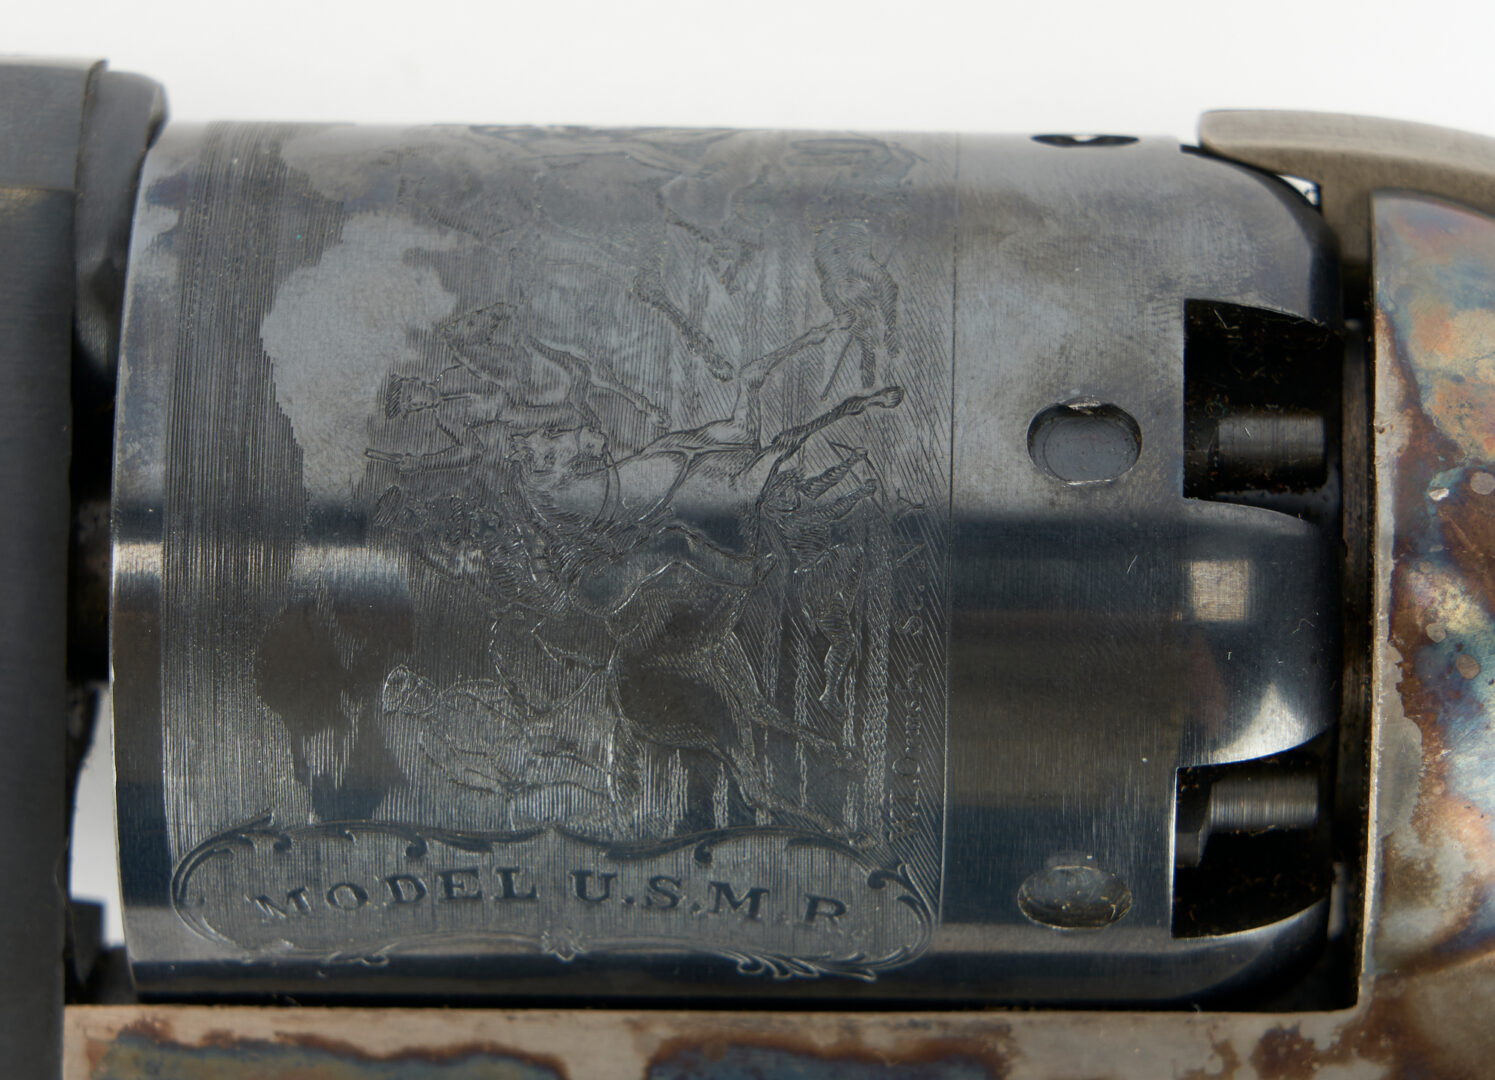 Lot 682: 2 Italian Repro. Colt Revolvers, incl. Walker Model 1847, Model 1871-72 Open Top